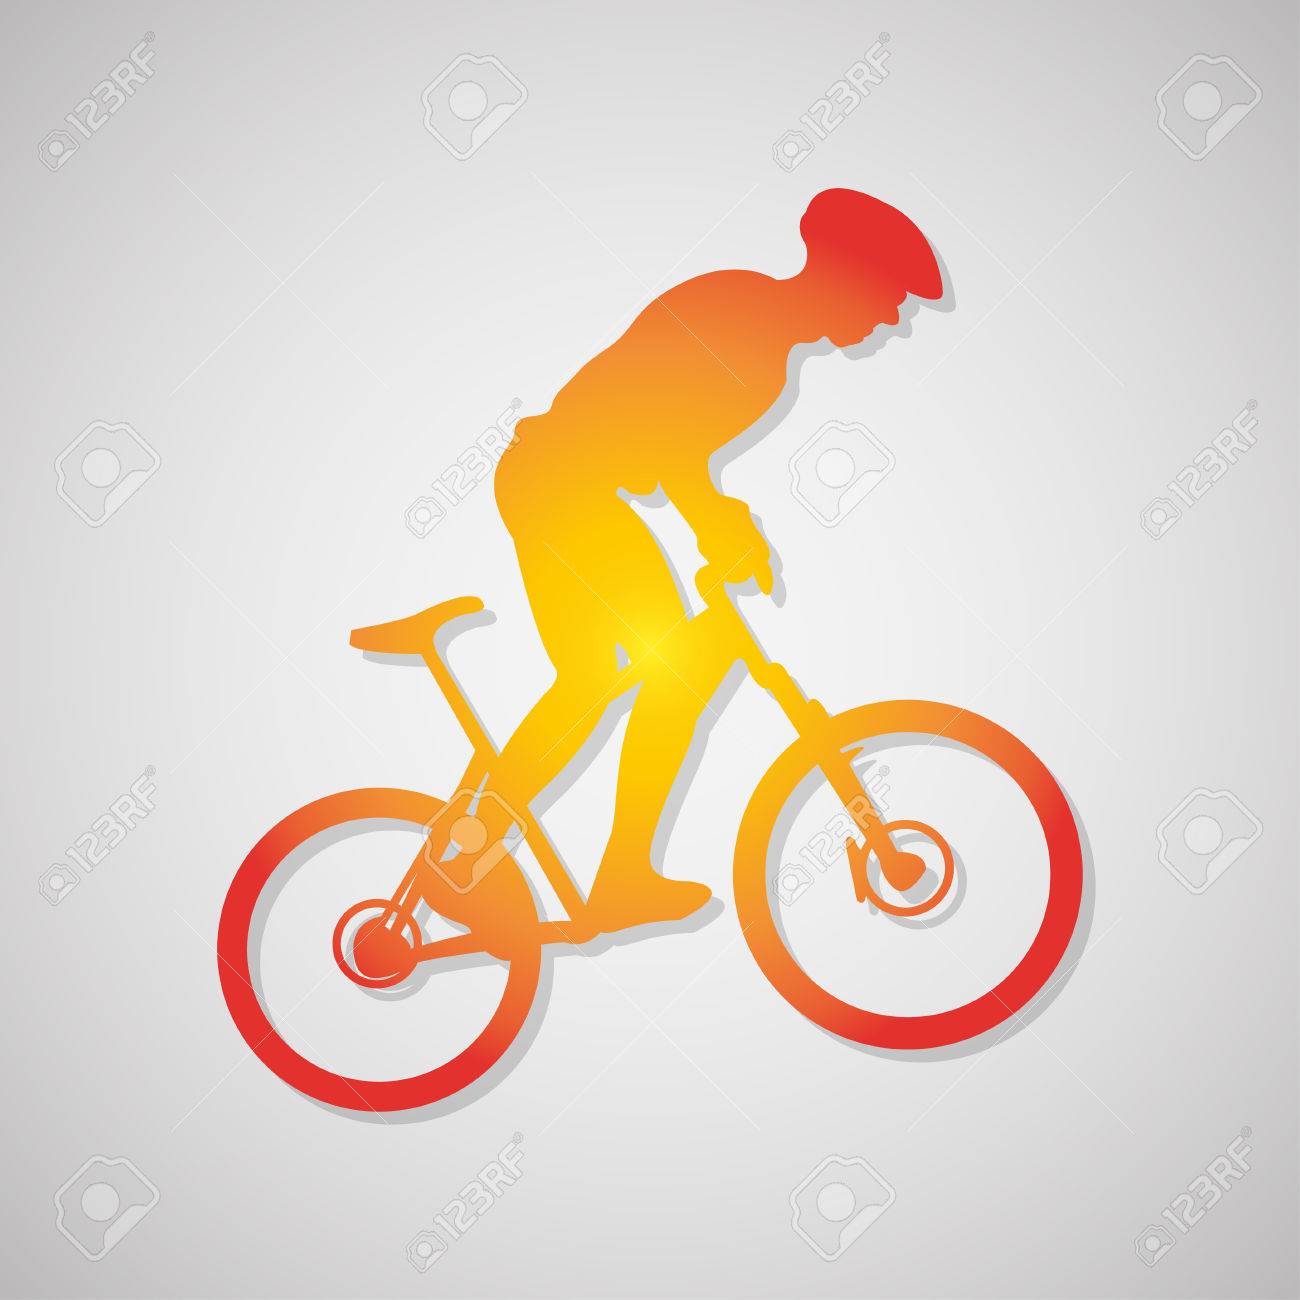 59459937 icono de ciclista simple muestra de la ruta en bicicleta de color naranja ilustracin vectorial